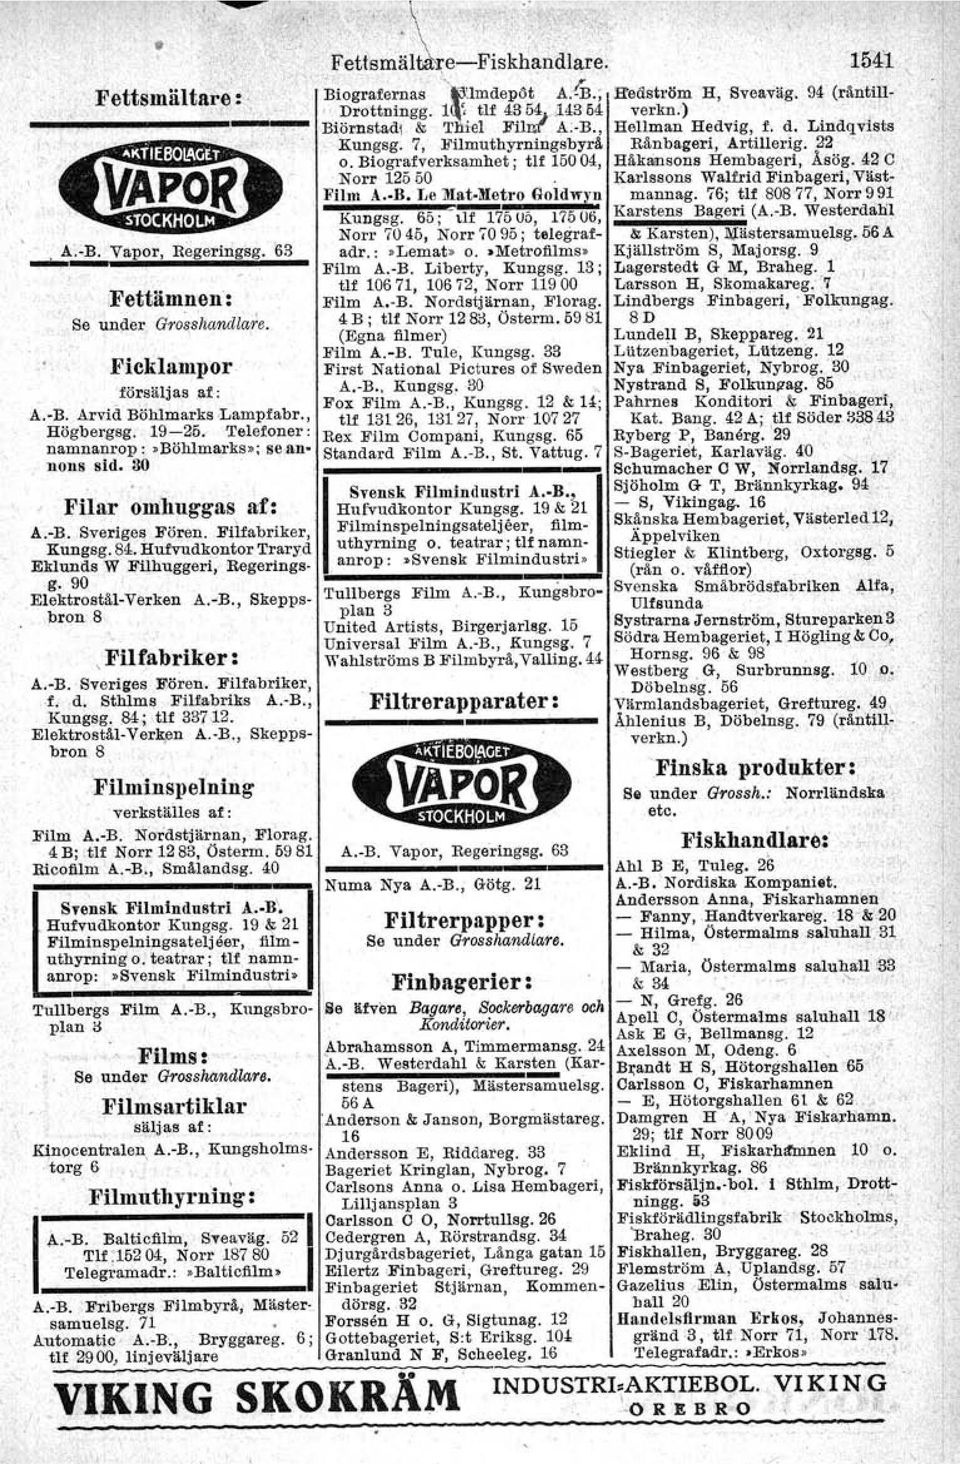 Elektrostål-Verken A.-B., Skeppsbron 8,Filfabriker : A.-B. SverigeB Fören. Filfabriker, f, d. Sthlms Filfabriks A.-B., Kungsg, 84; tlf 337,12. ElektroBtål-Verk,en A.